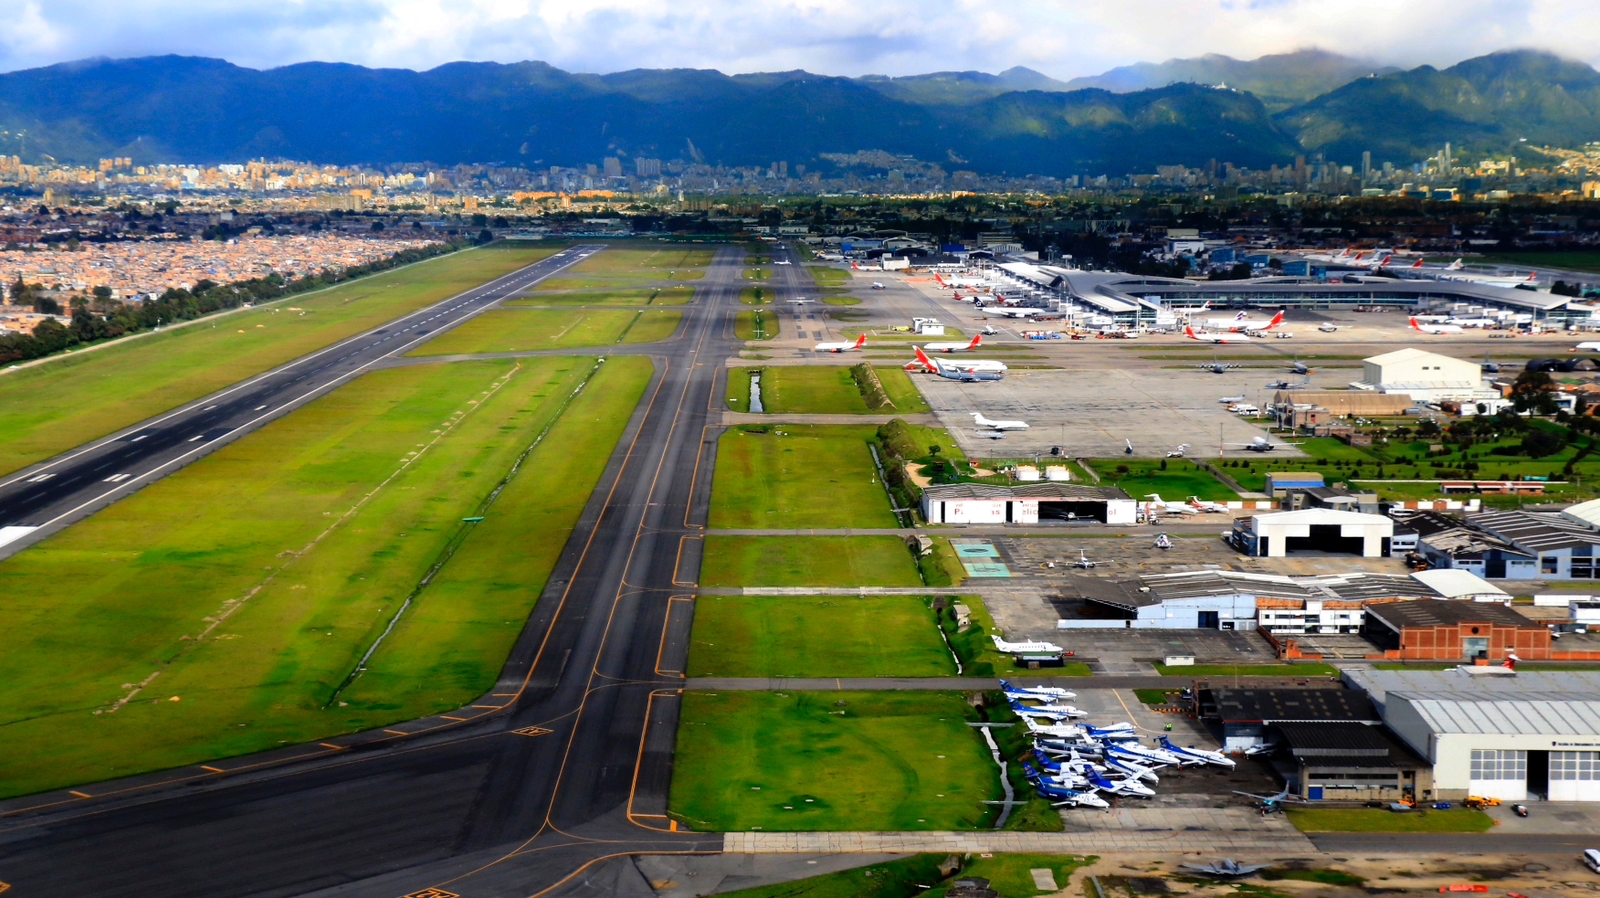 Grandes ventajas para Bogotá - Agencia Nacional de Infraestructura da el primer paso para hacer realidad El máximo desarrollo del aeropuerto el Dorado “EDMax” y aprueba la prefactibilidad